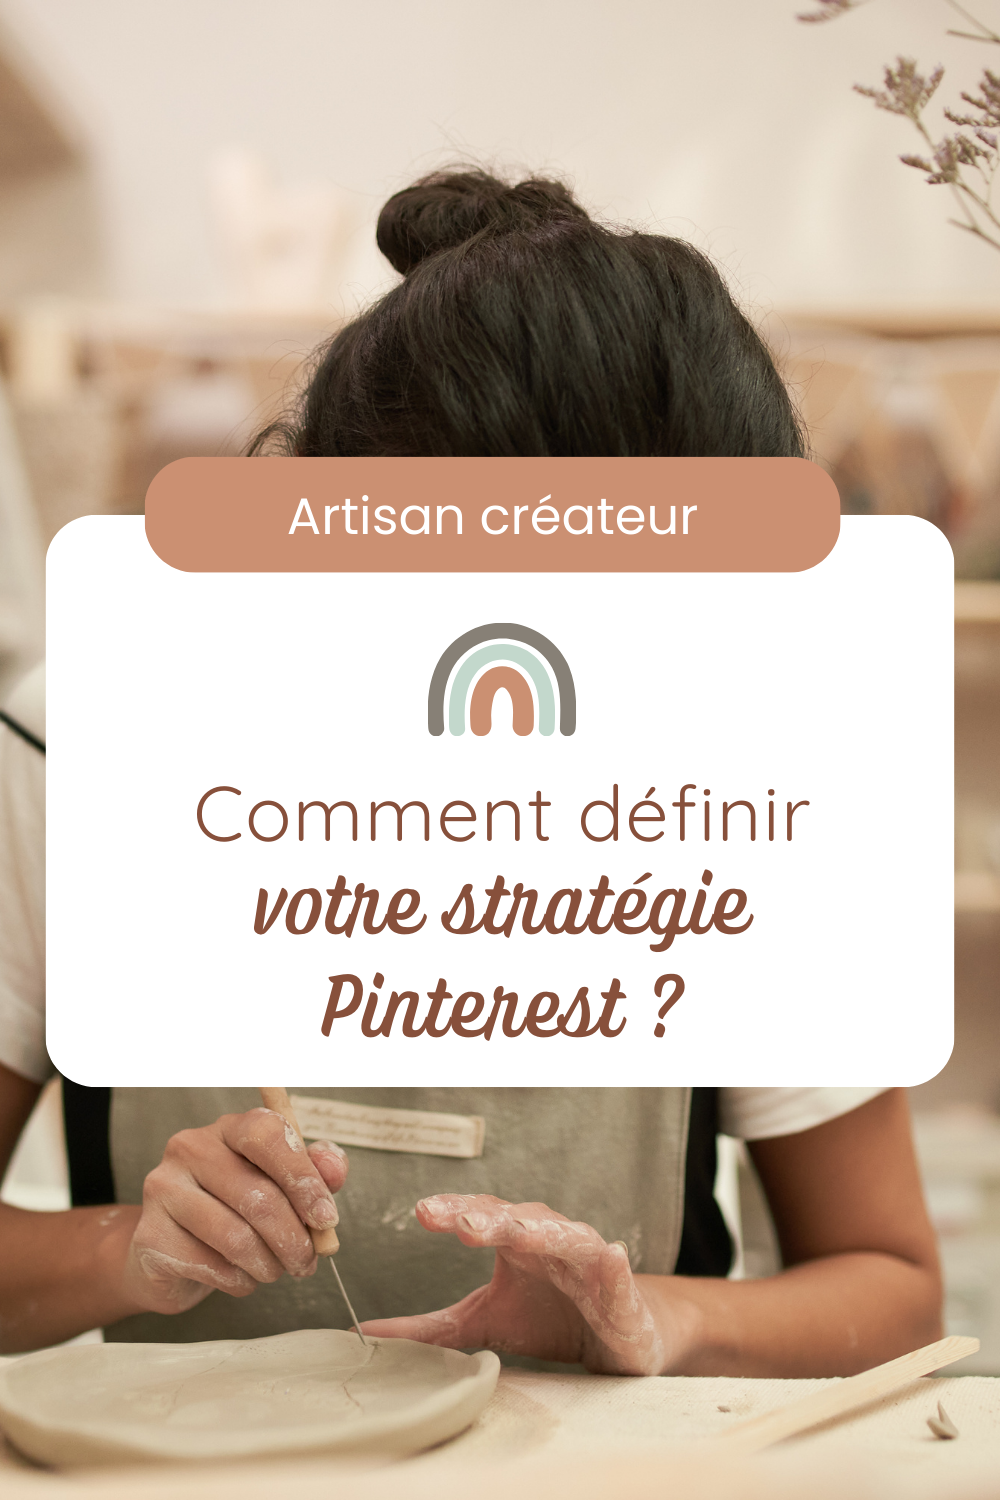 Artisan créateur : les étapes pour définir votre stratégie sur Pinterest